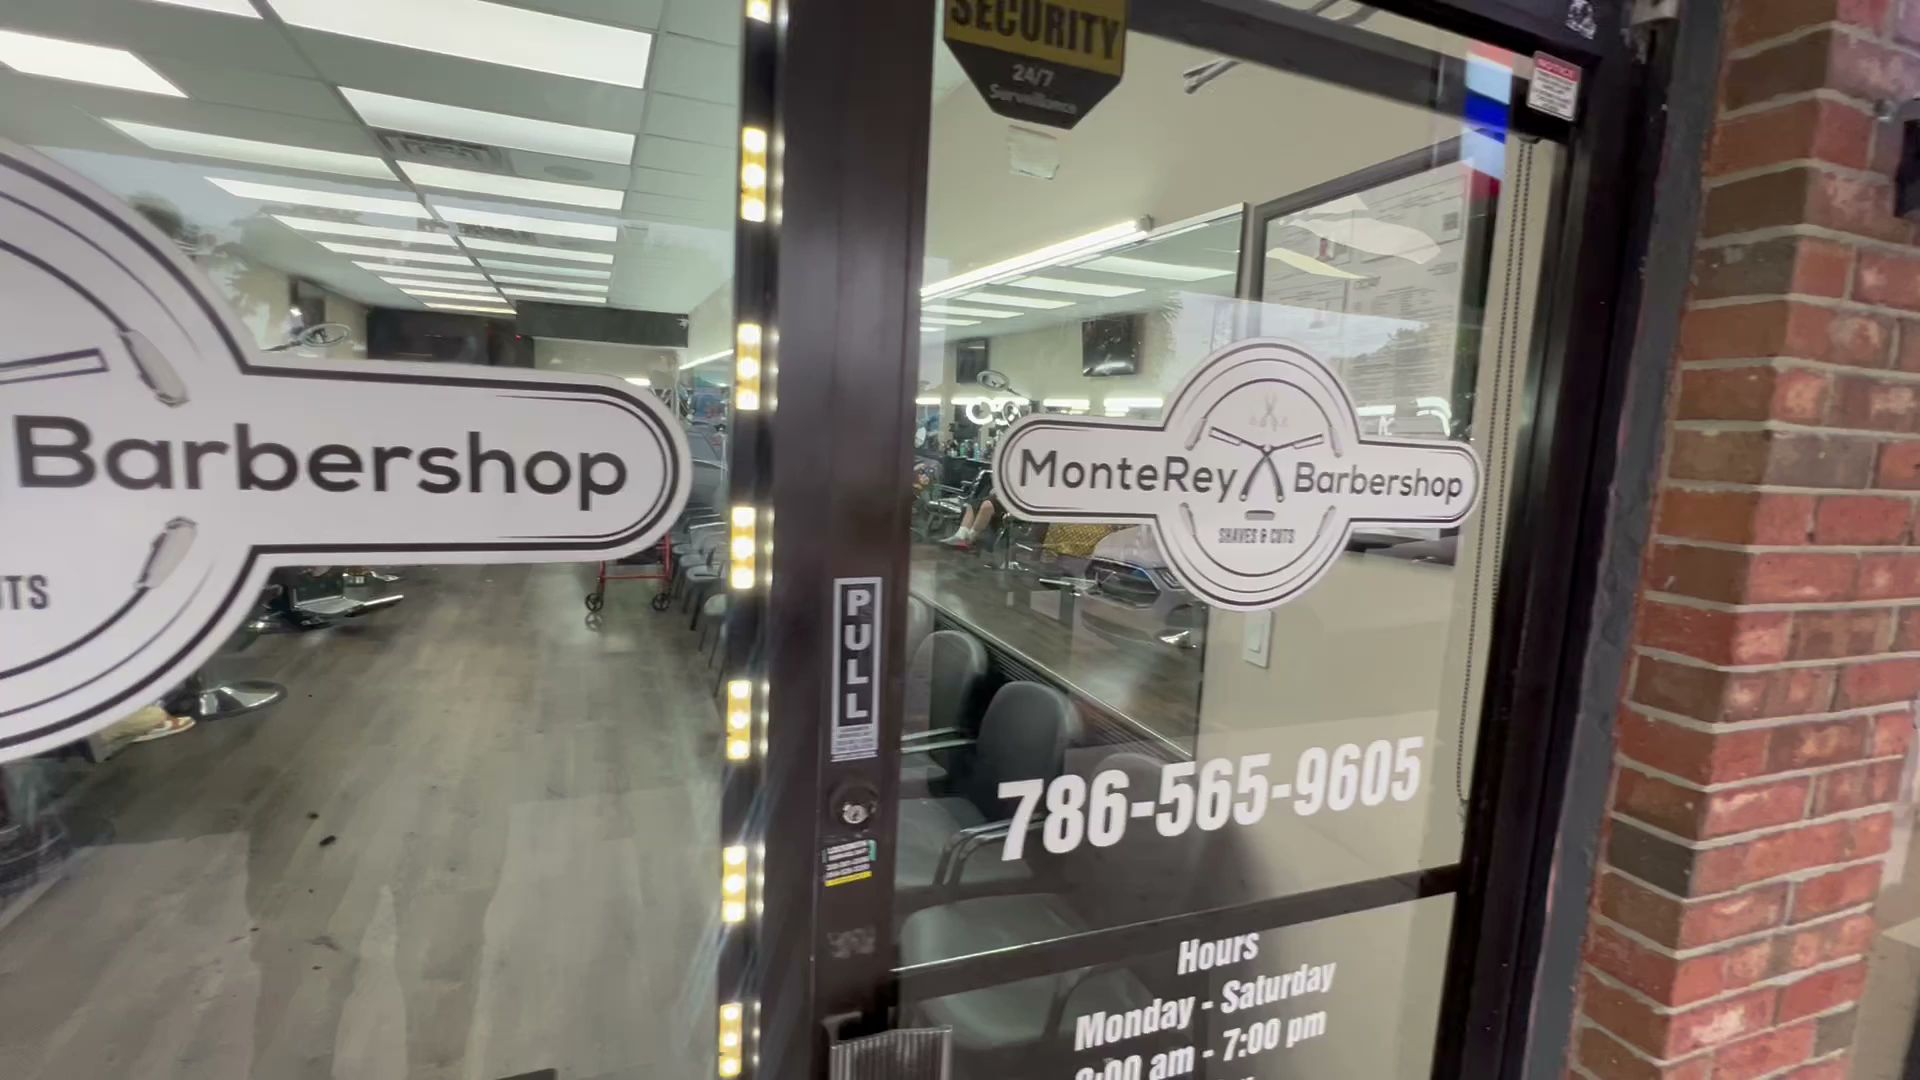 MonteRey Barbershop